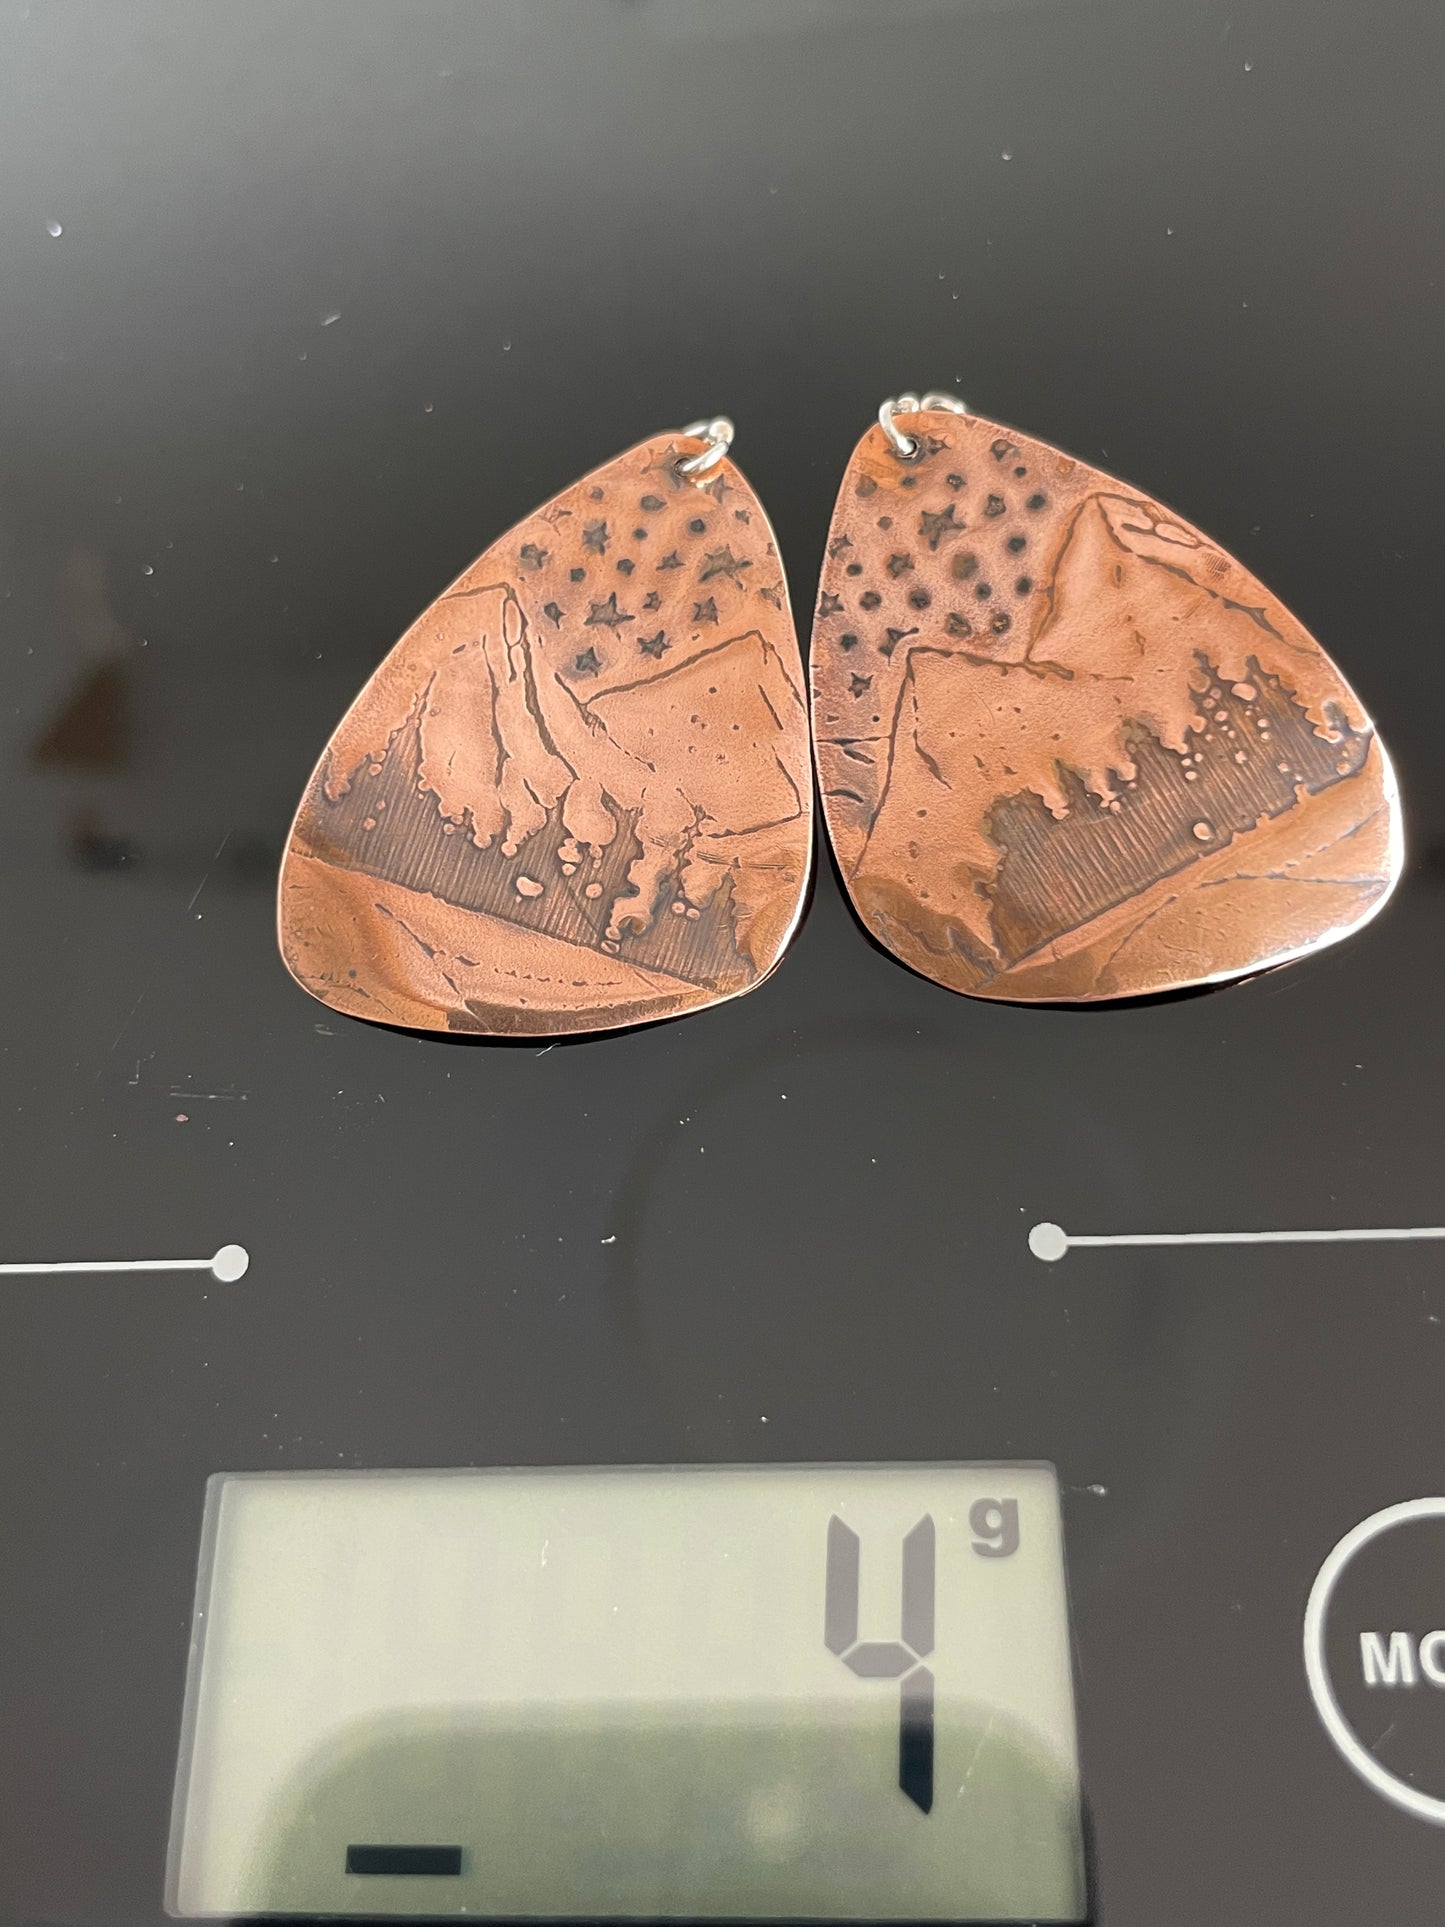 Copper Mountains Earrings